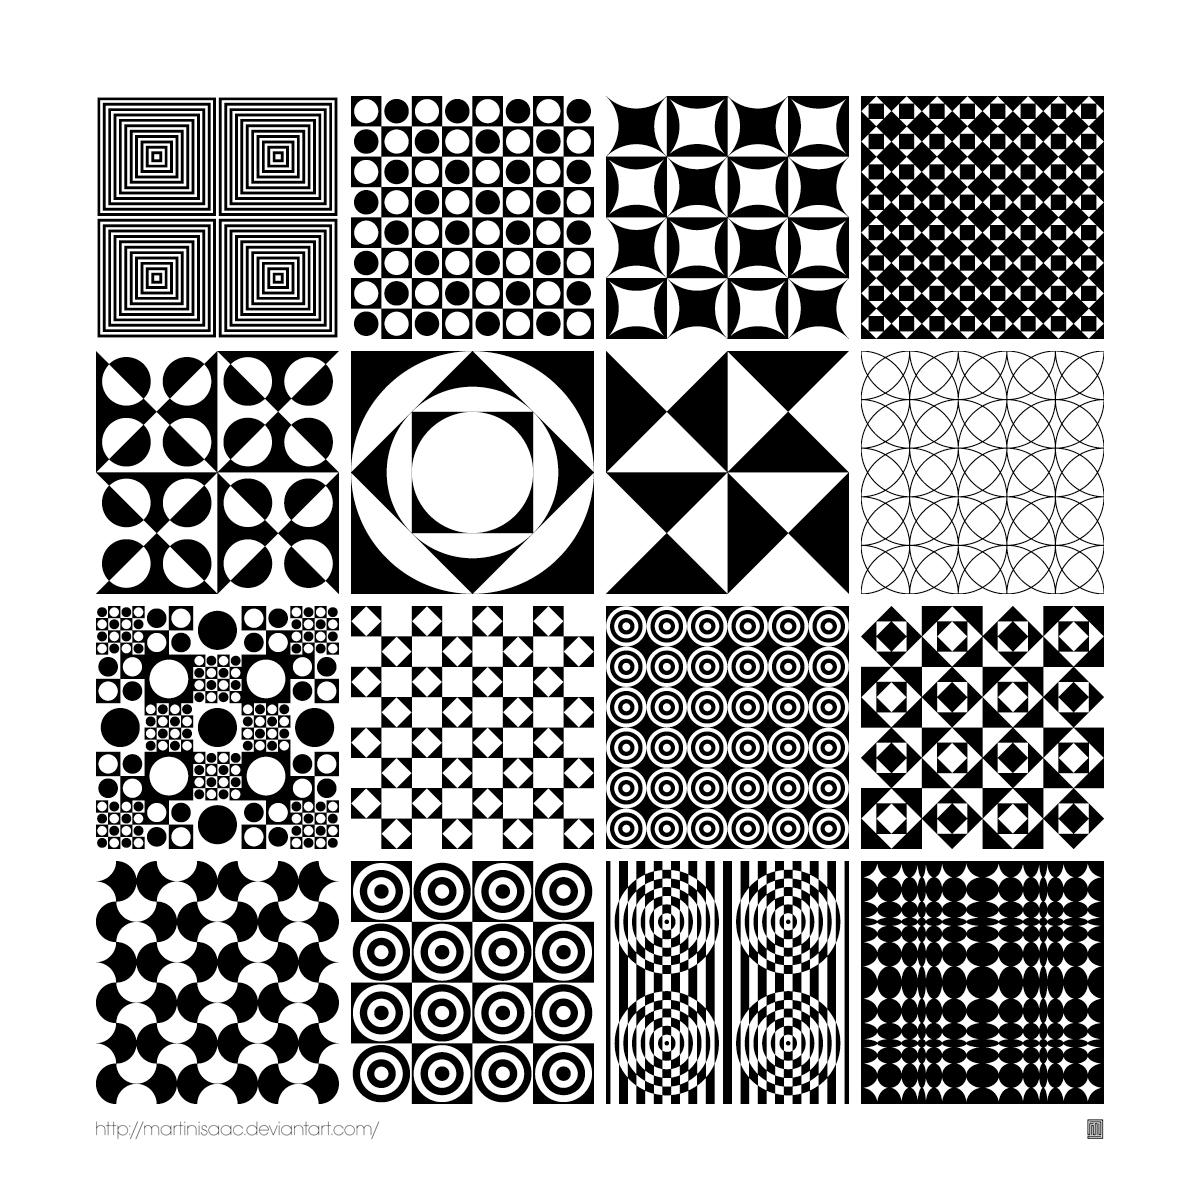 Free Patterns - Download Free Patterns